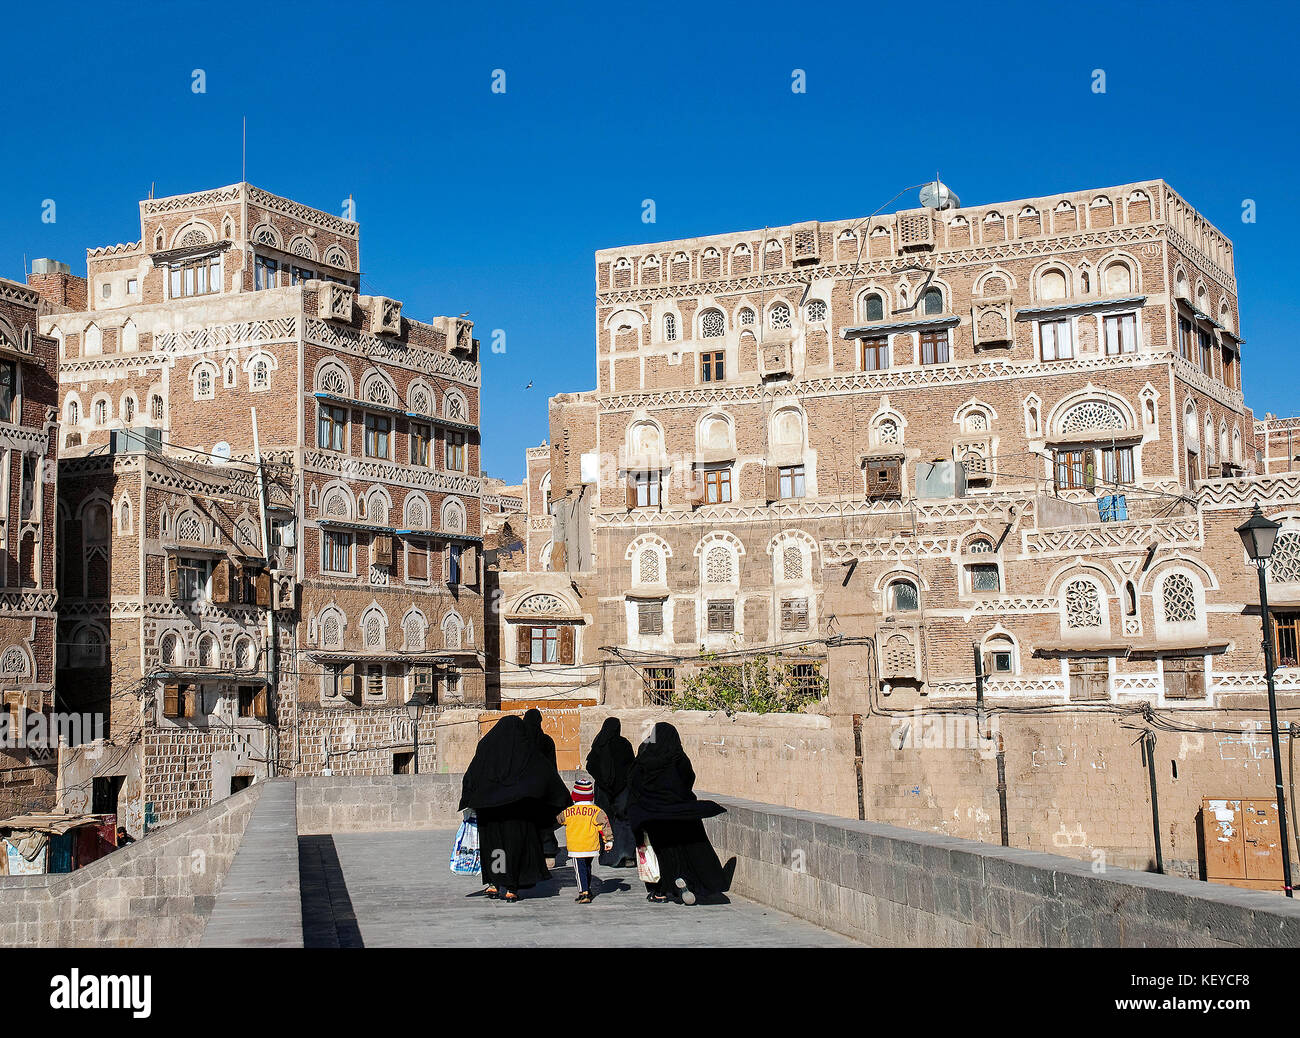 Scena di strada nel centro di sanaa città vecchia in Yemen Foto Stock